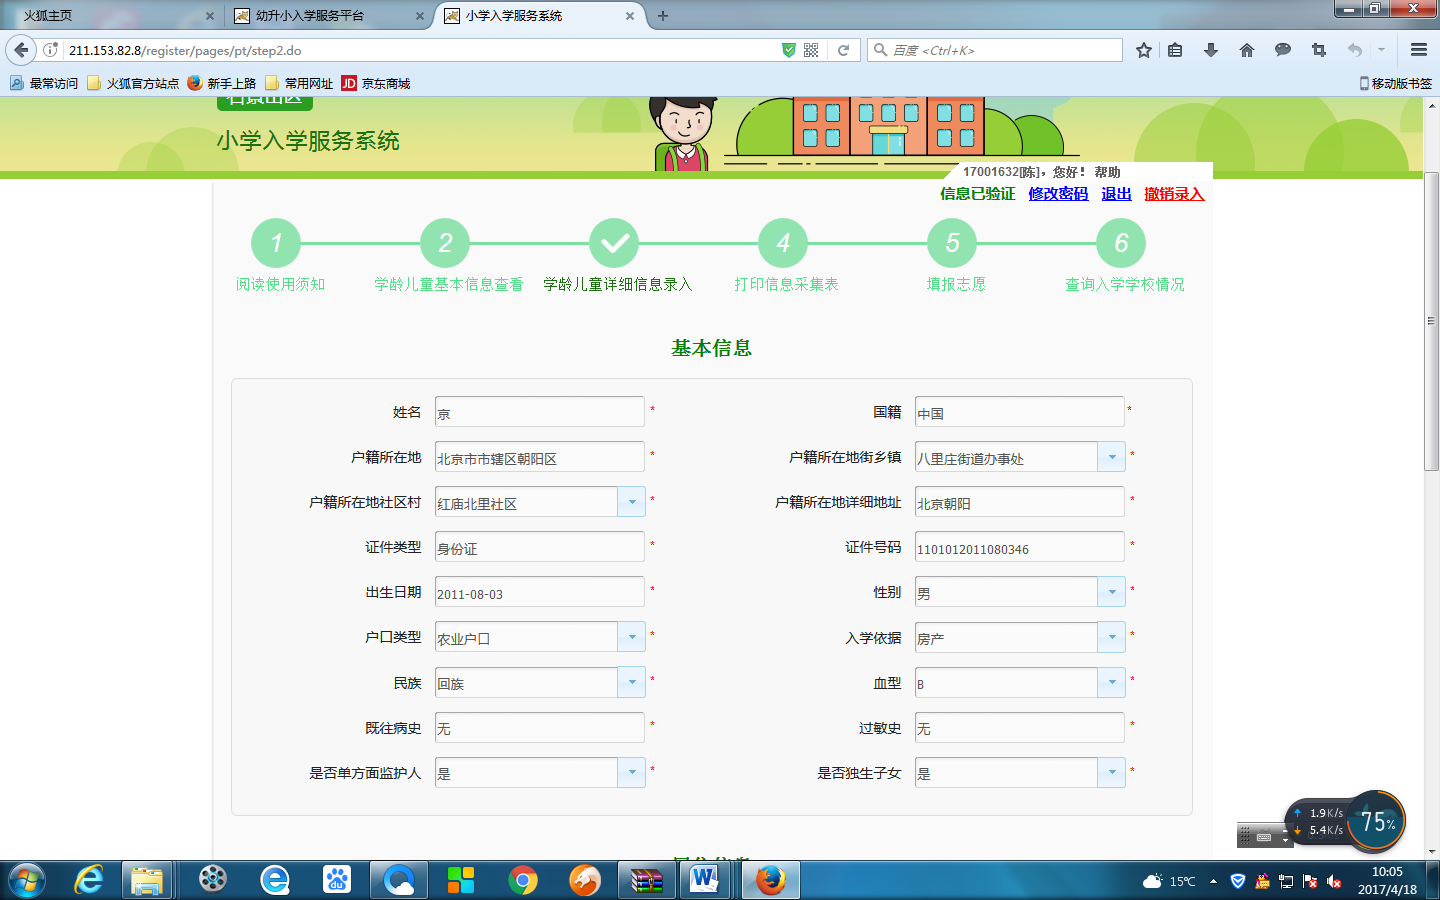 非北京市户籍适龄儿童入学信息采集流程图12